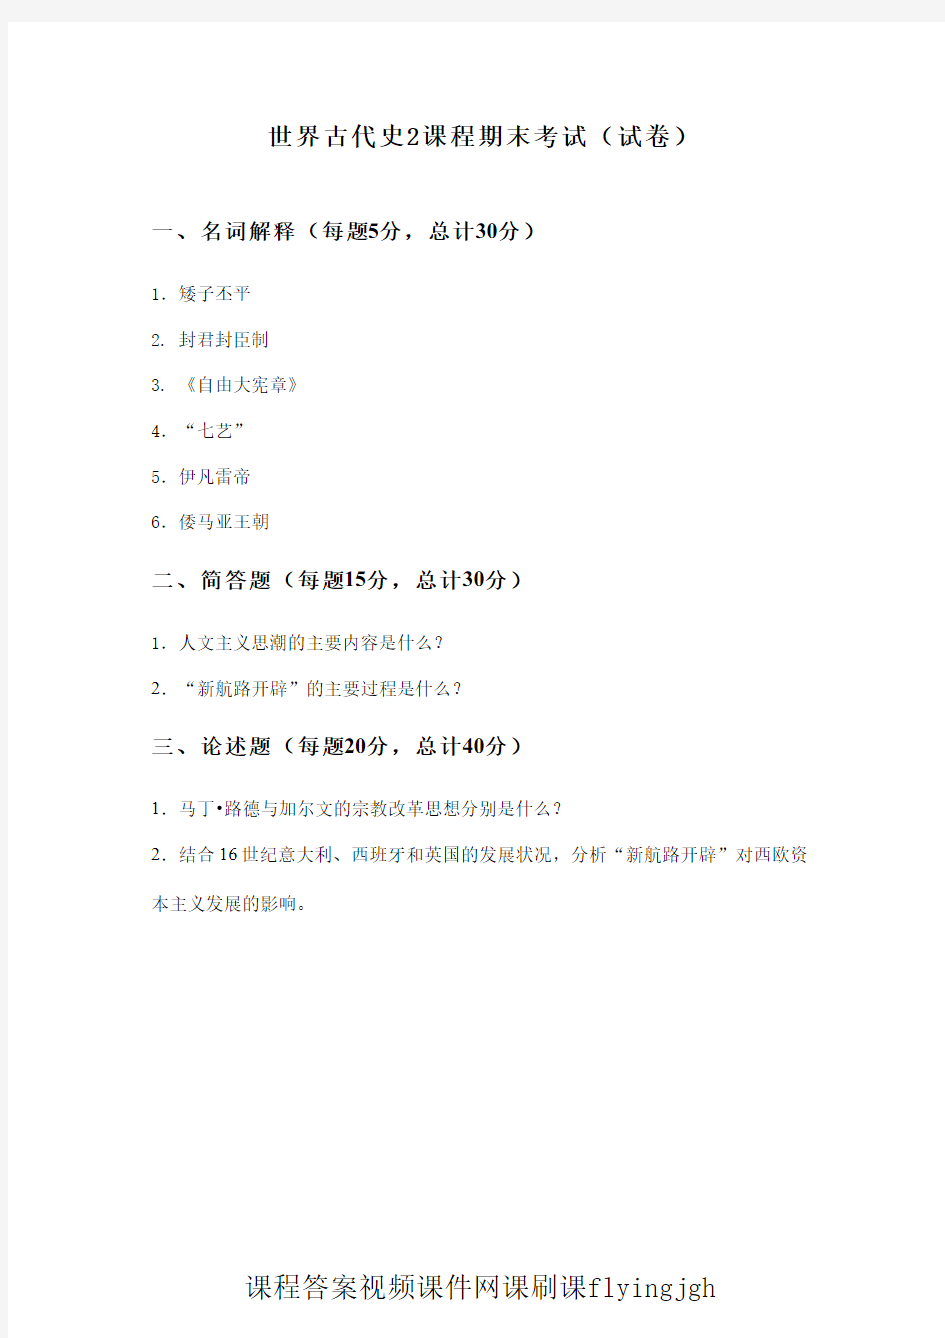 中国大学MOOC慕课(2)--世界古代史2课程期末考试(试卷)网课刷课